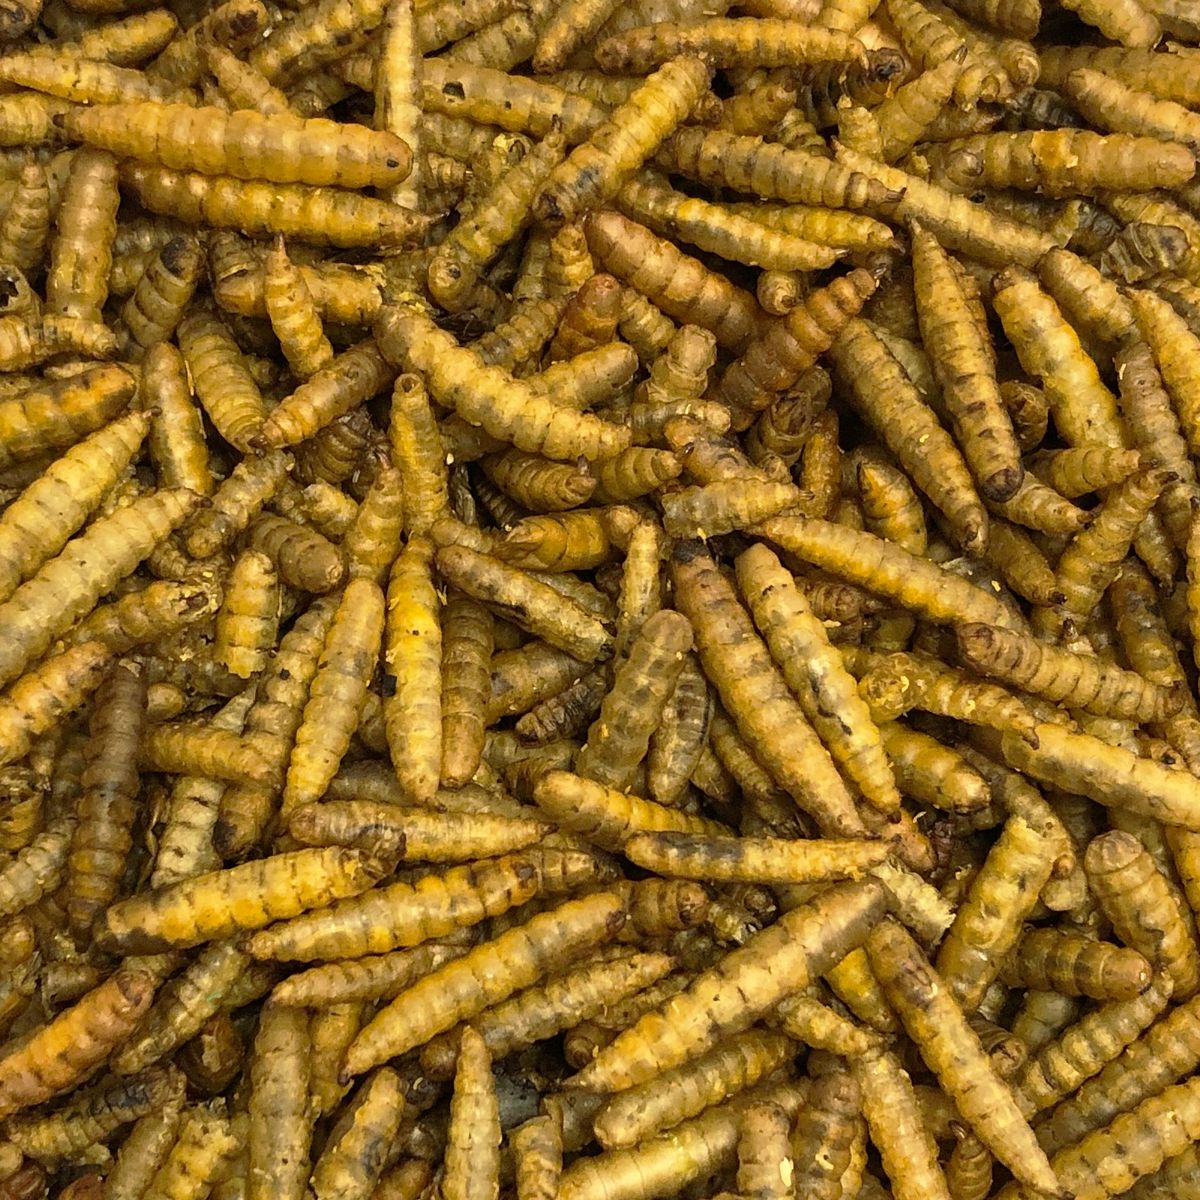 Vivani Gedroogde BSF larven - 375 gram